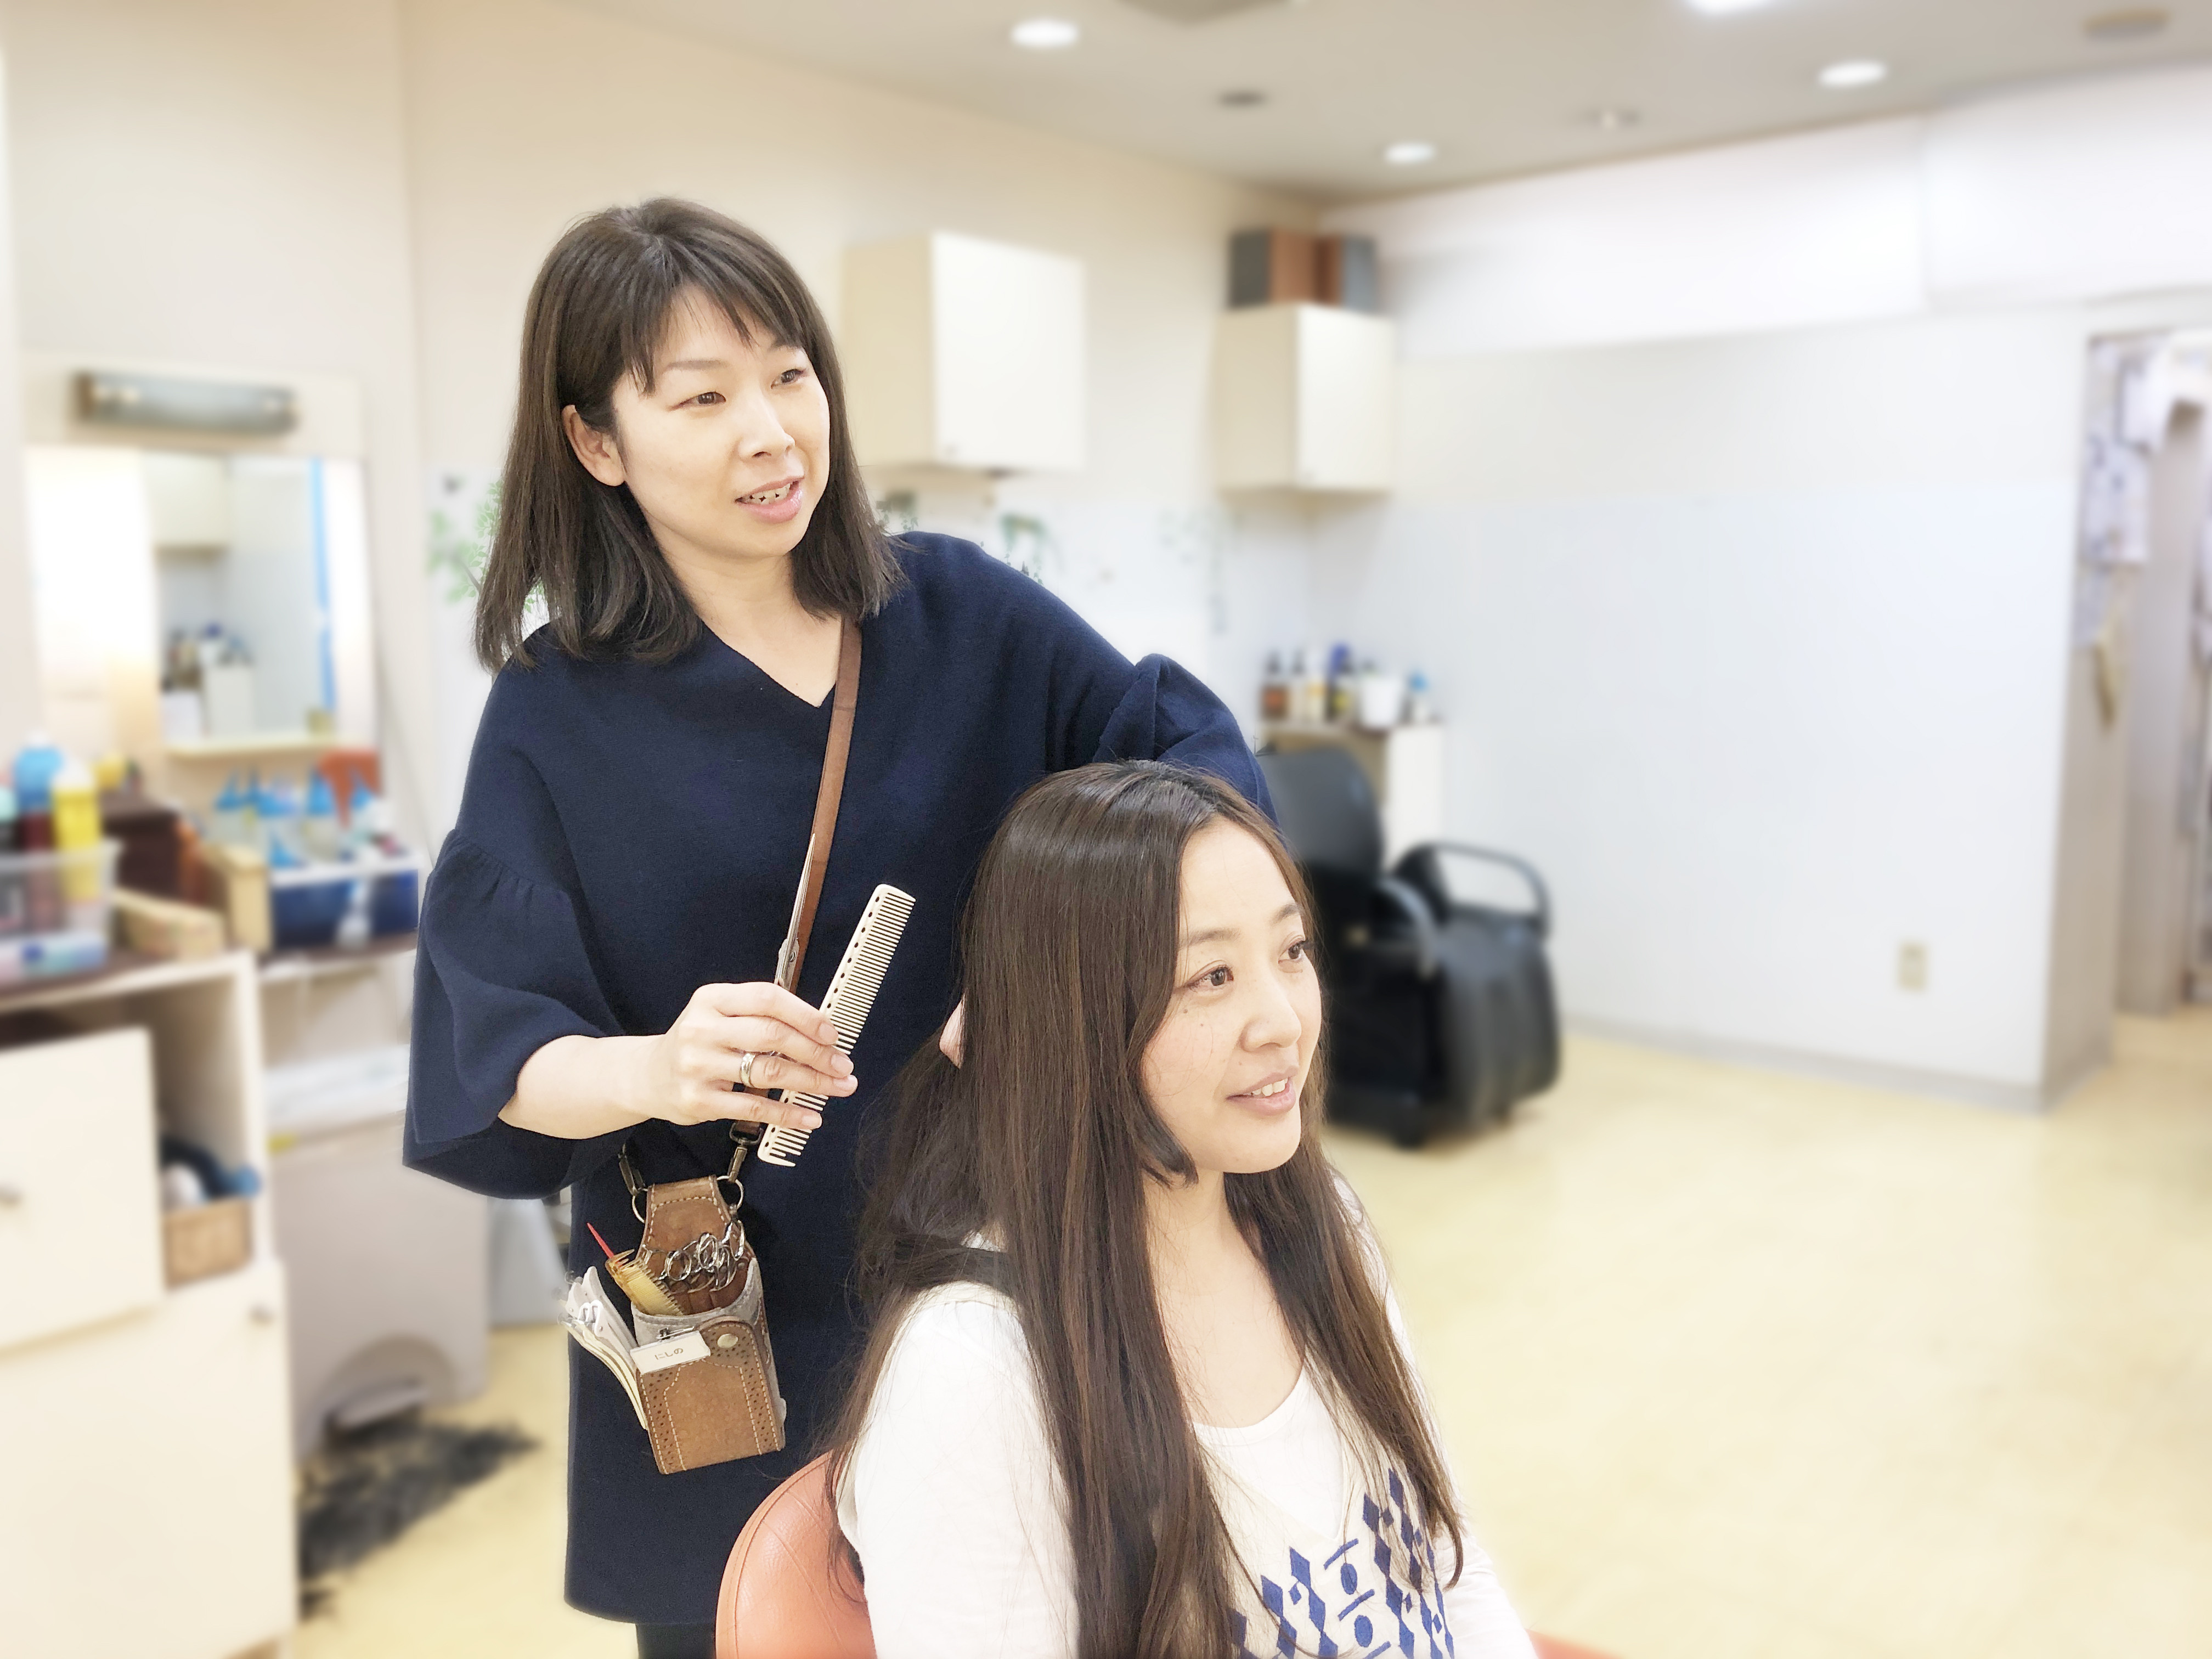 美容師求人 美容師スタイリスト 八坂 東京 ヘアーサロンシーズン 美容師の求人 転職 募集 美容師求人 Com 美容師 美容室の求人多数掲載